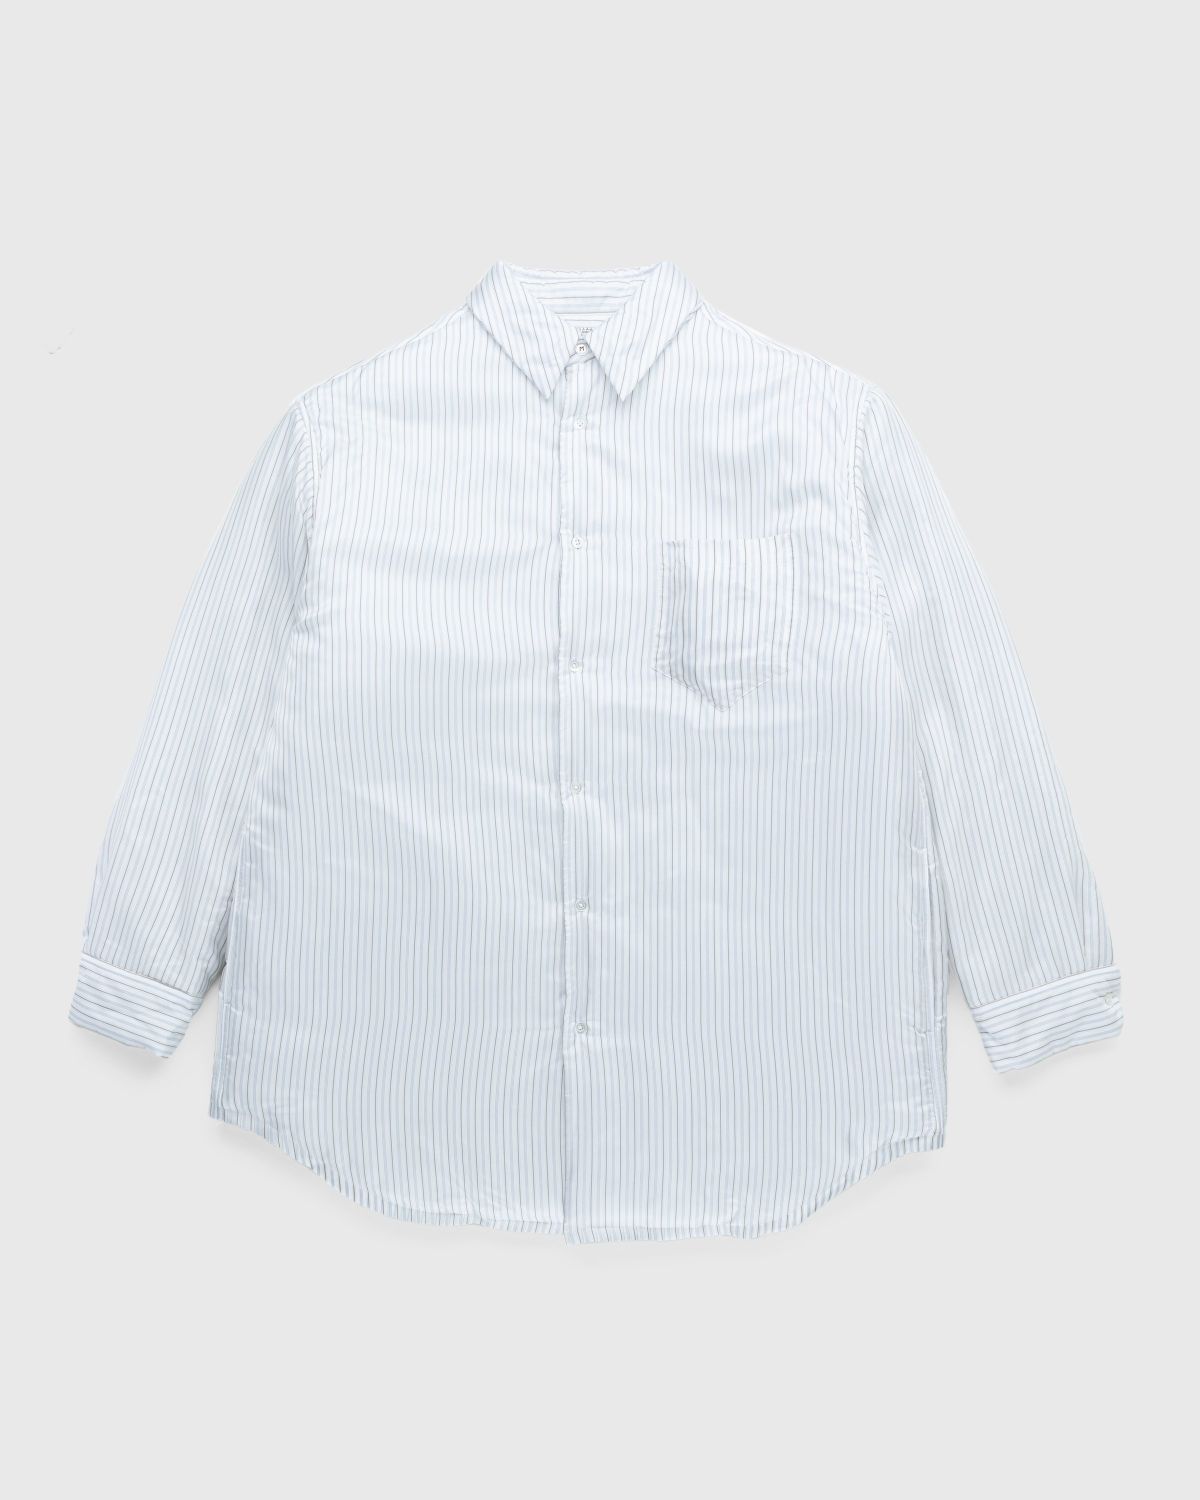 Maison Margiela – Padded Stripe Shirt Multi - Longsleeve Shirts - White - Image 1